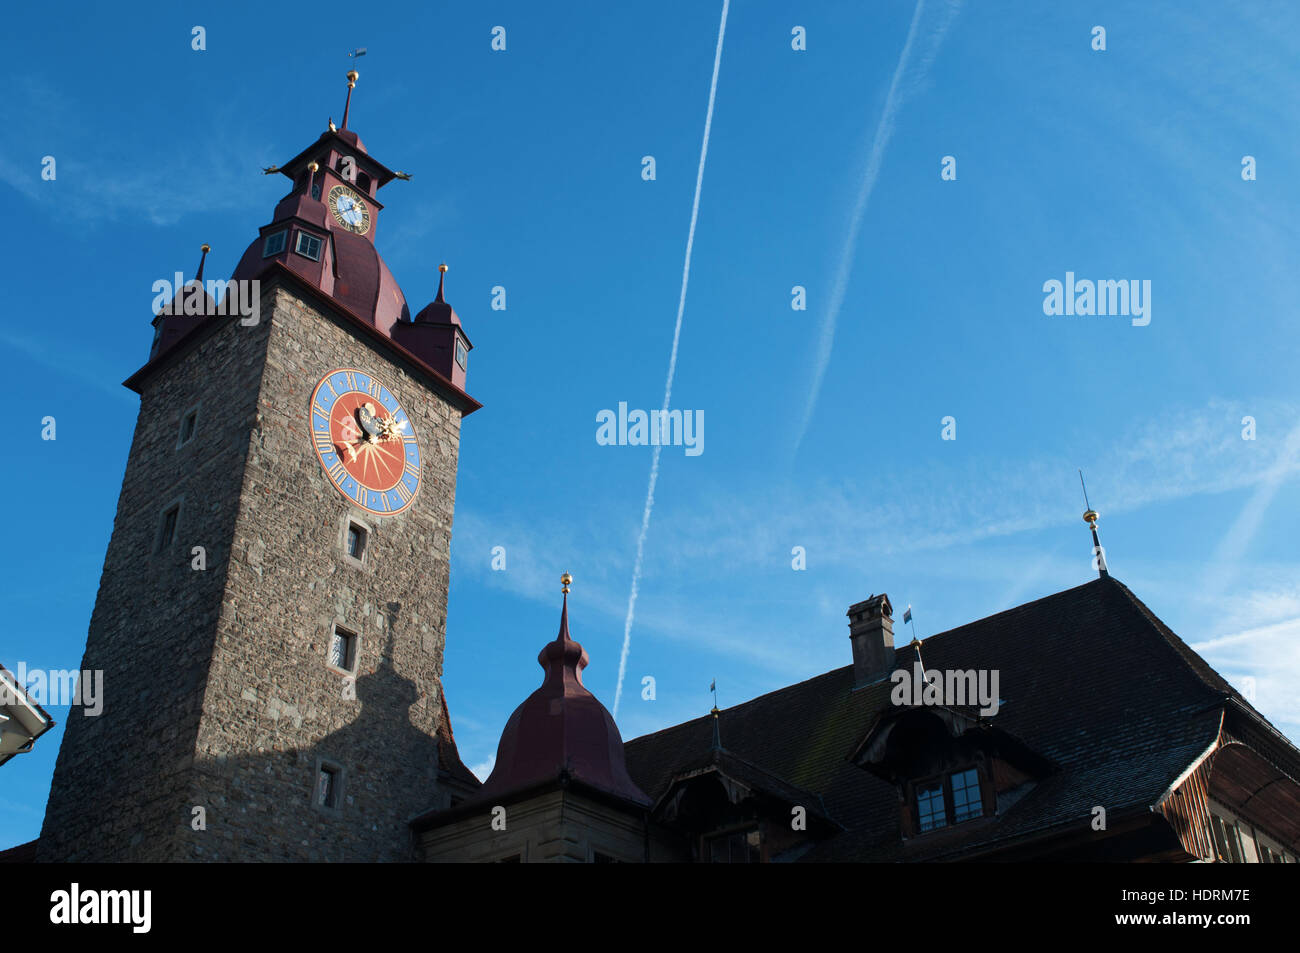 Schweiz, Europa, Architektur: Skyline und Blick auf Zyttrum, das Zit Turm mit der ältesten Stadt clock von Hans Luter im Jahre 1535 in Luzern gebaut Stockfoto